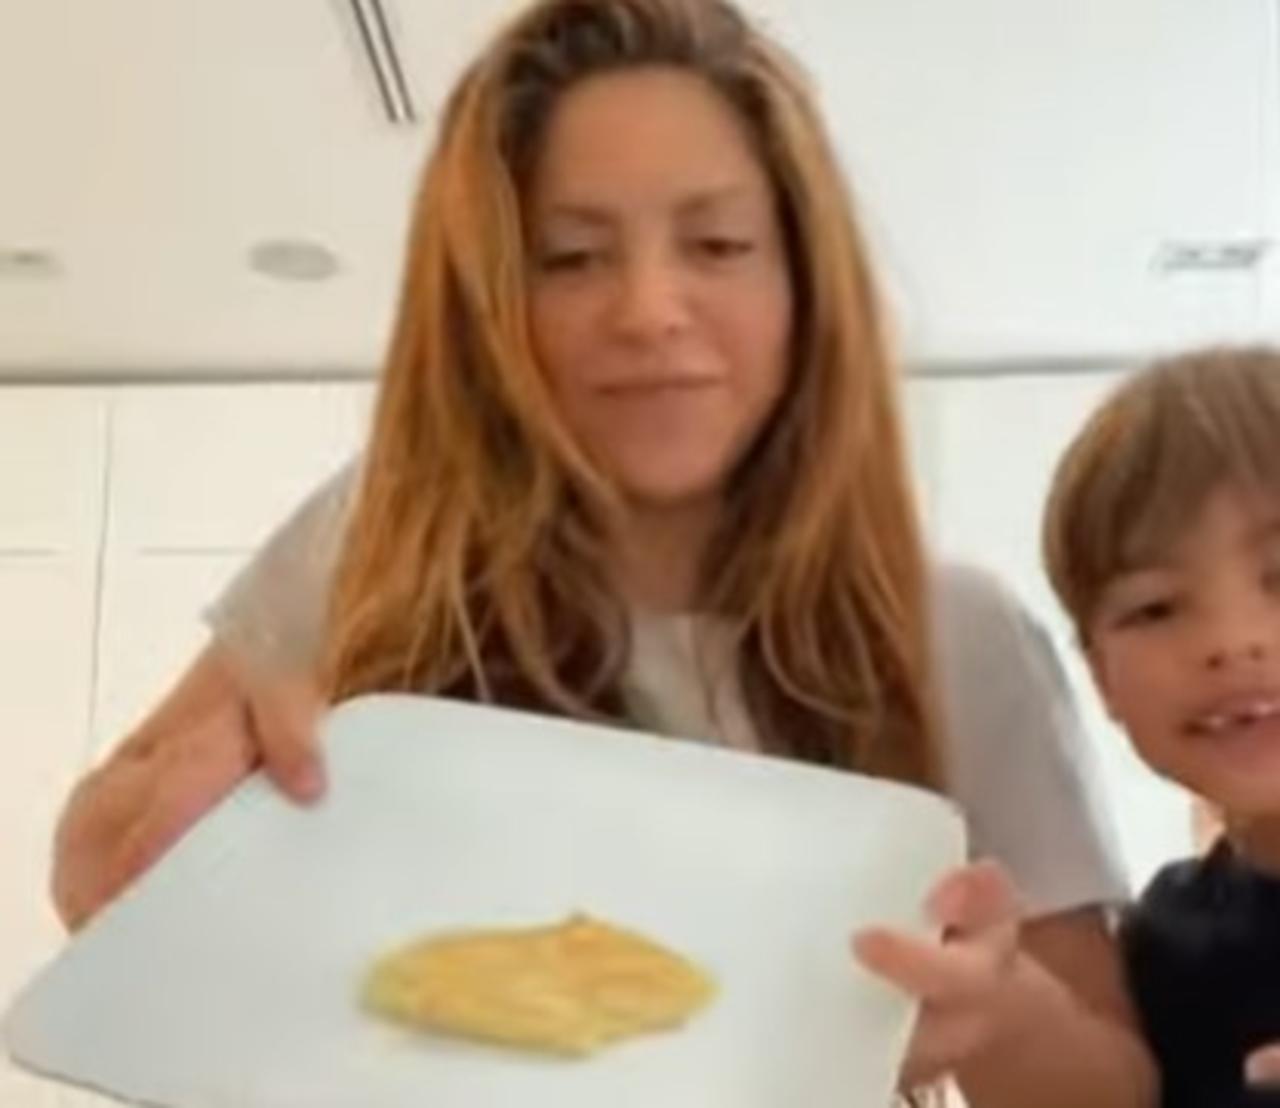 Con cerca de 11 millones de reproducciones en Instagram, Shakira se convirtió en tendencia de Internet con su 'fallido' intento de cocinar hot cakes junto a sus hijos. 